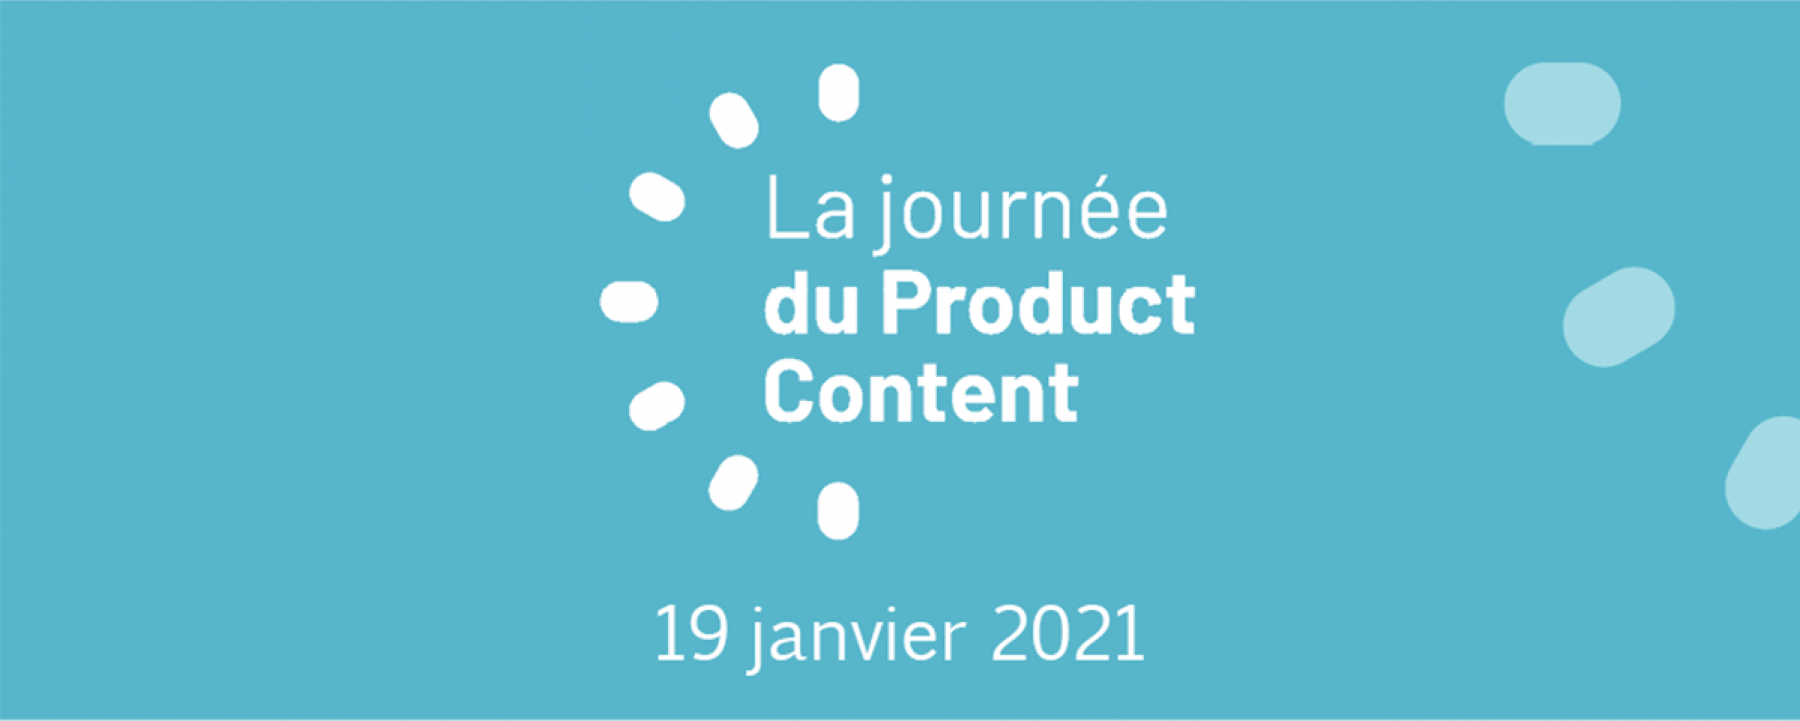 La journée du Product Content, un événement organisé par NetMedia Group le 19 janvier 2021